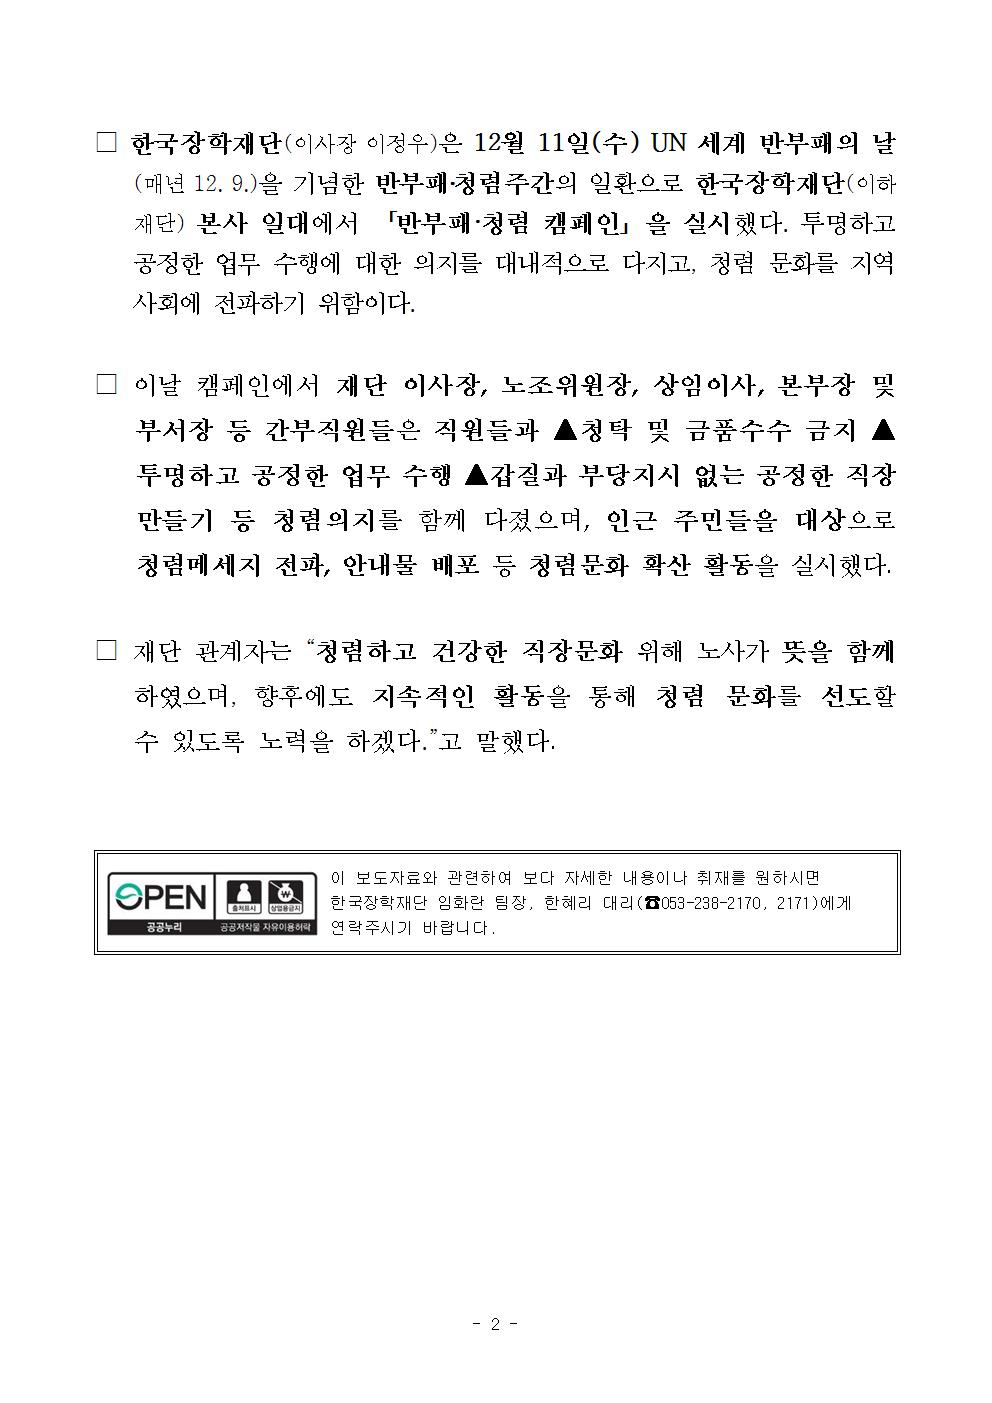 12-12(목)[보도자료] 한국장학재단, 청렴문화 확산 위한 노사 반부패·청렴 캠페인 개최002.jpg